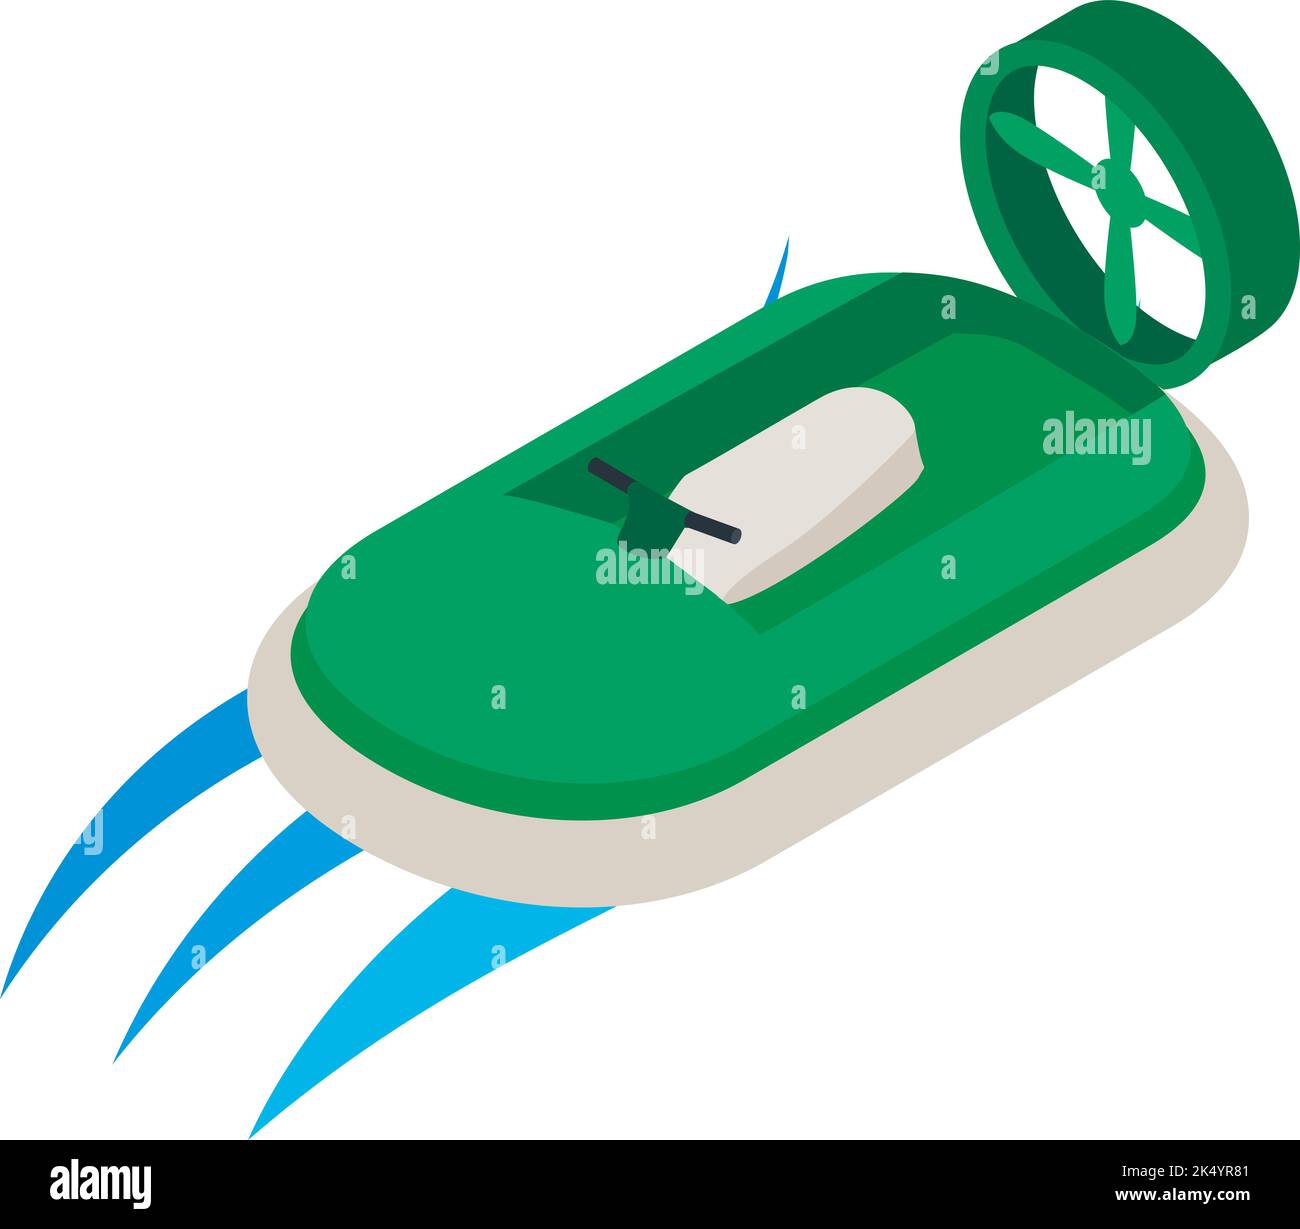 Placez le pointeur de la souris sur le vecteur isométrique de l'icône Nouvel aéroglisseur moderne vert sur l'icône de l'eau. Coussin d'air bateau, aéroglisseur, sport nautique Illustration de Vecteur